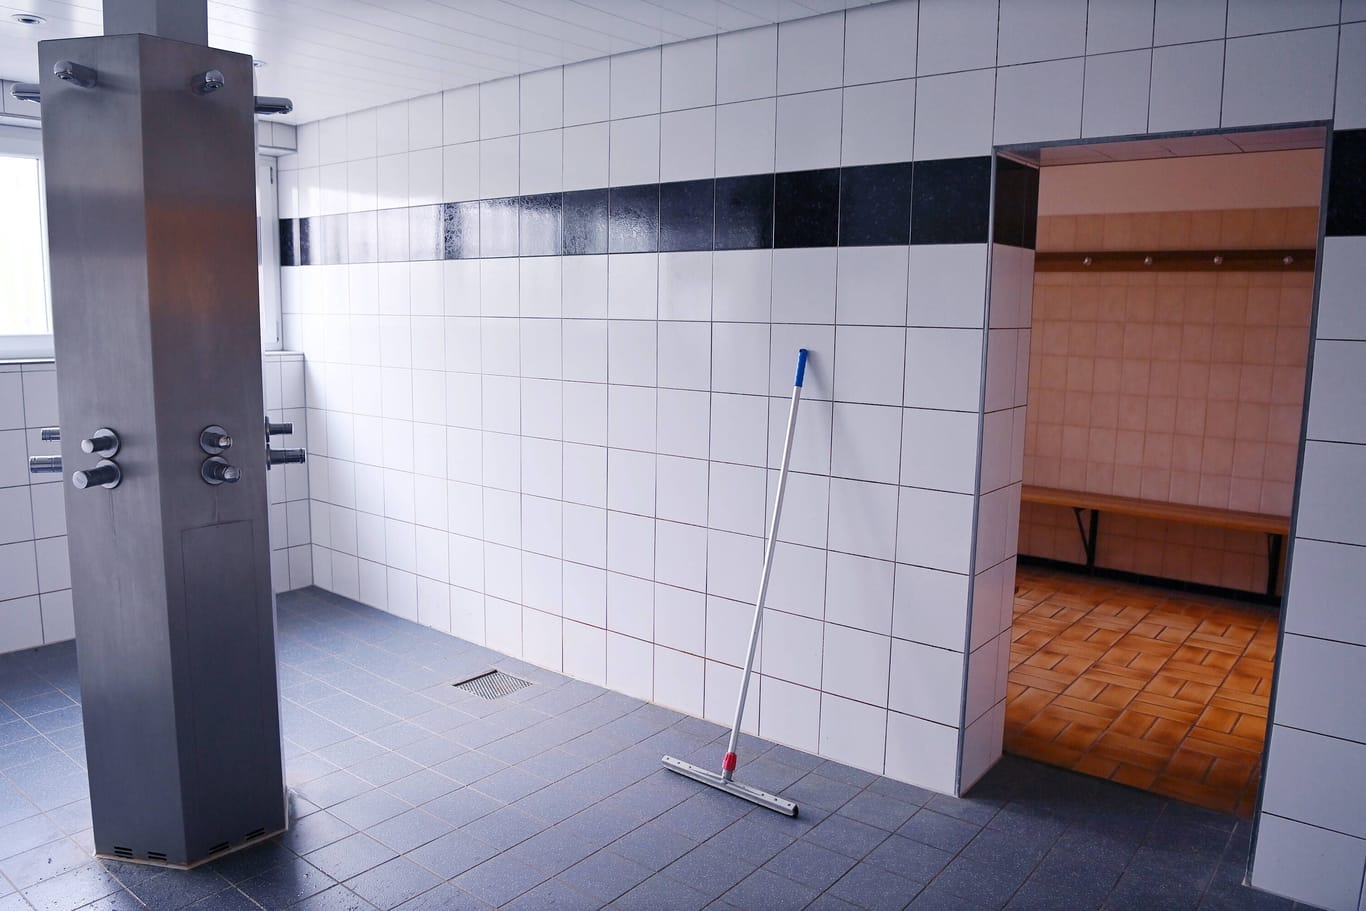 Dusche in einem Sportverein (Symbolbild): Ein Sporttrainer wurde wegen schwerem sexuellen Missbrauch verurteilt.